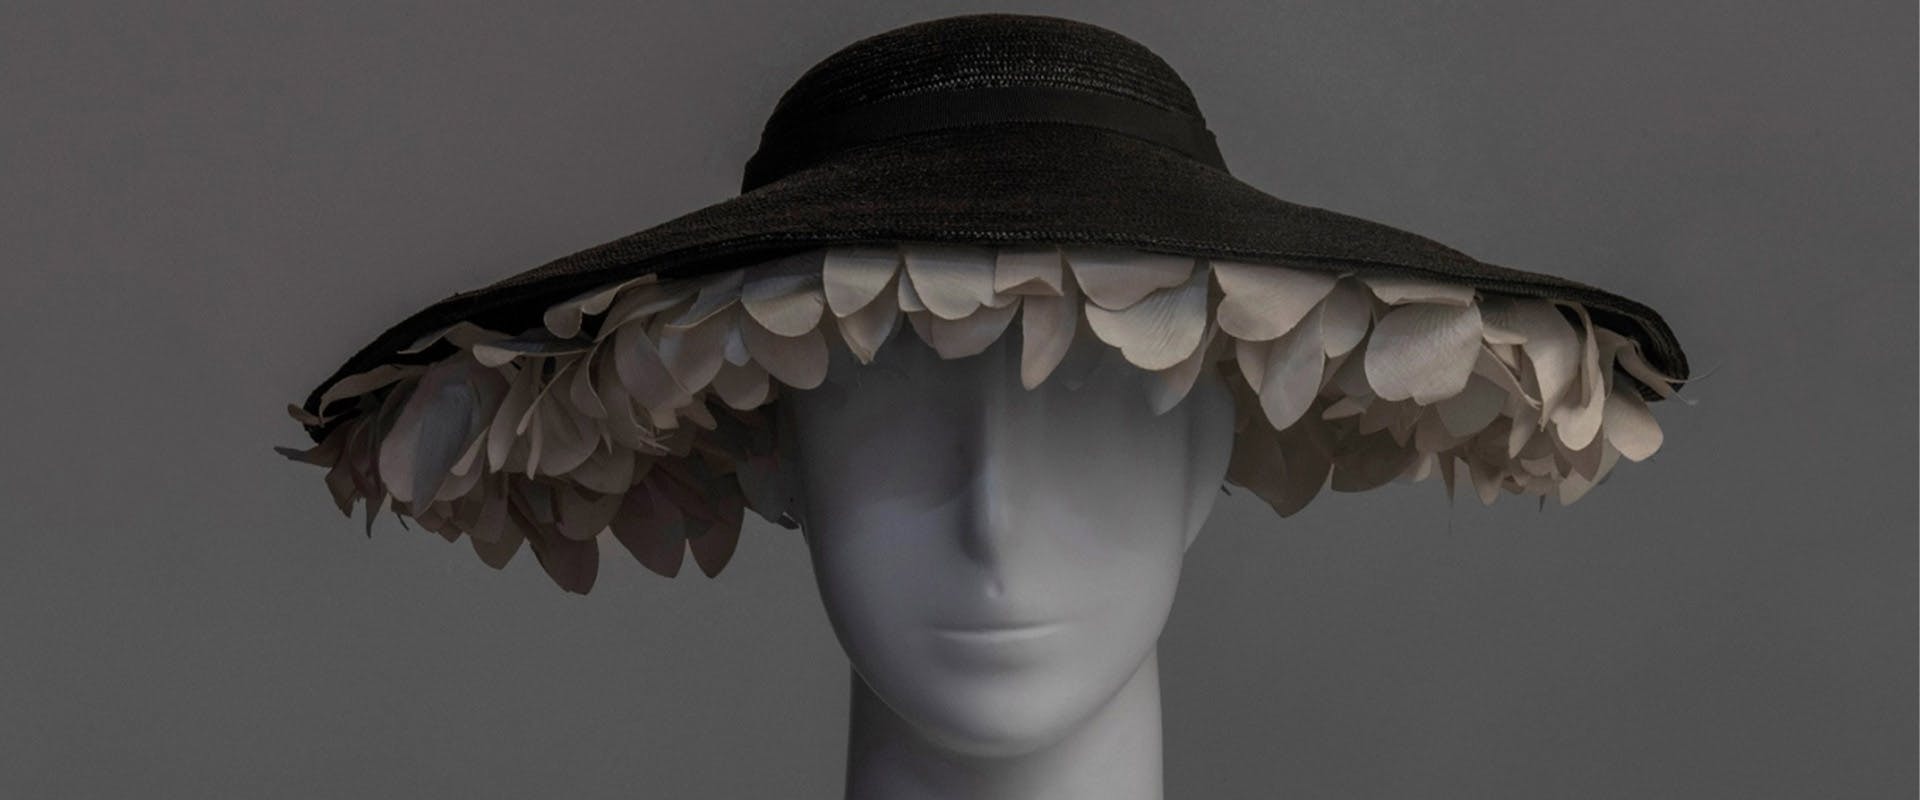 Il cappello fra arte e stravaganza